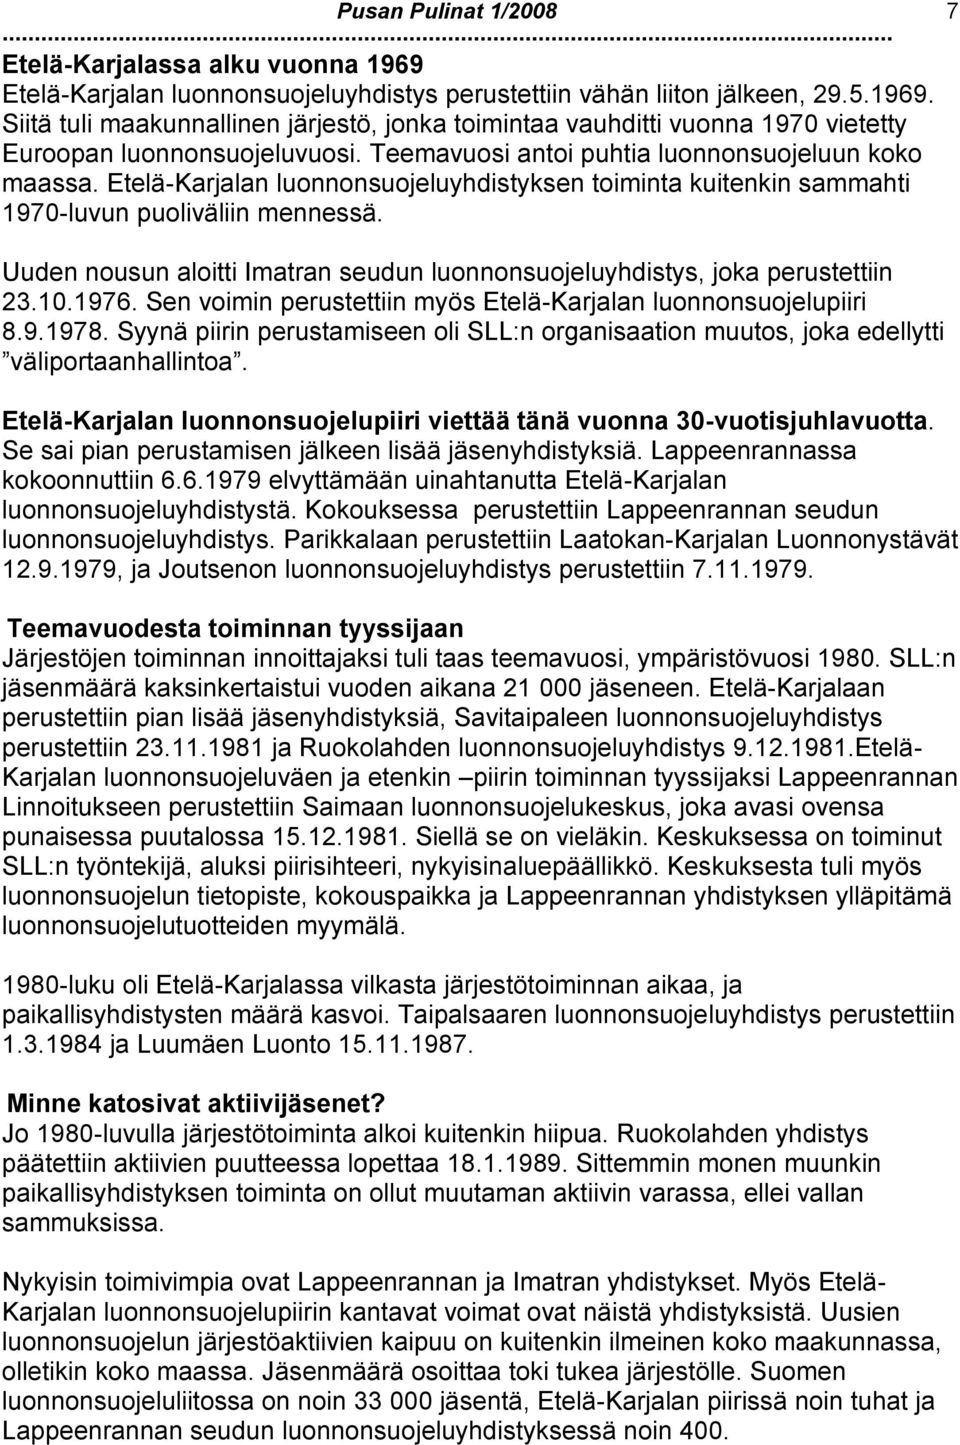 Uuden nousun aloitti Imatran seudun luonnonsuojeluyhdistys, joka perustettiin 23.10.1976. Sen voimin perustettiin myös Etelä-Karjalan luonnonsuojelupiiri 8.9.1978.